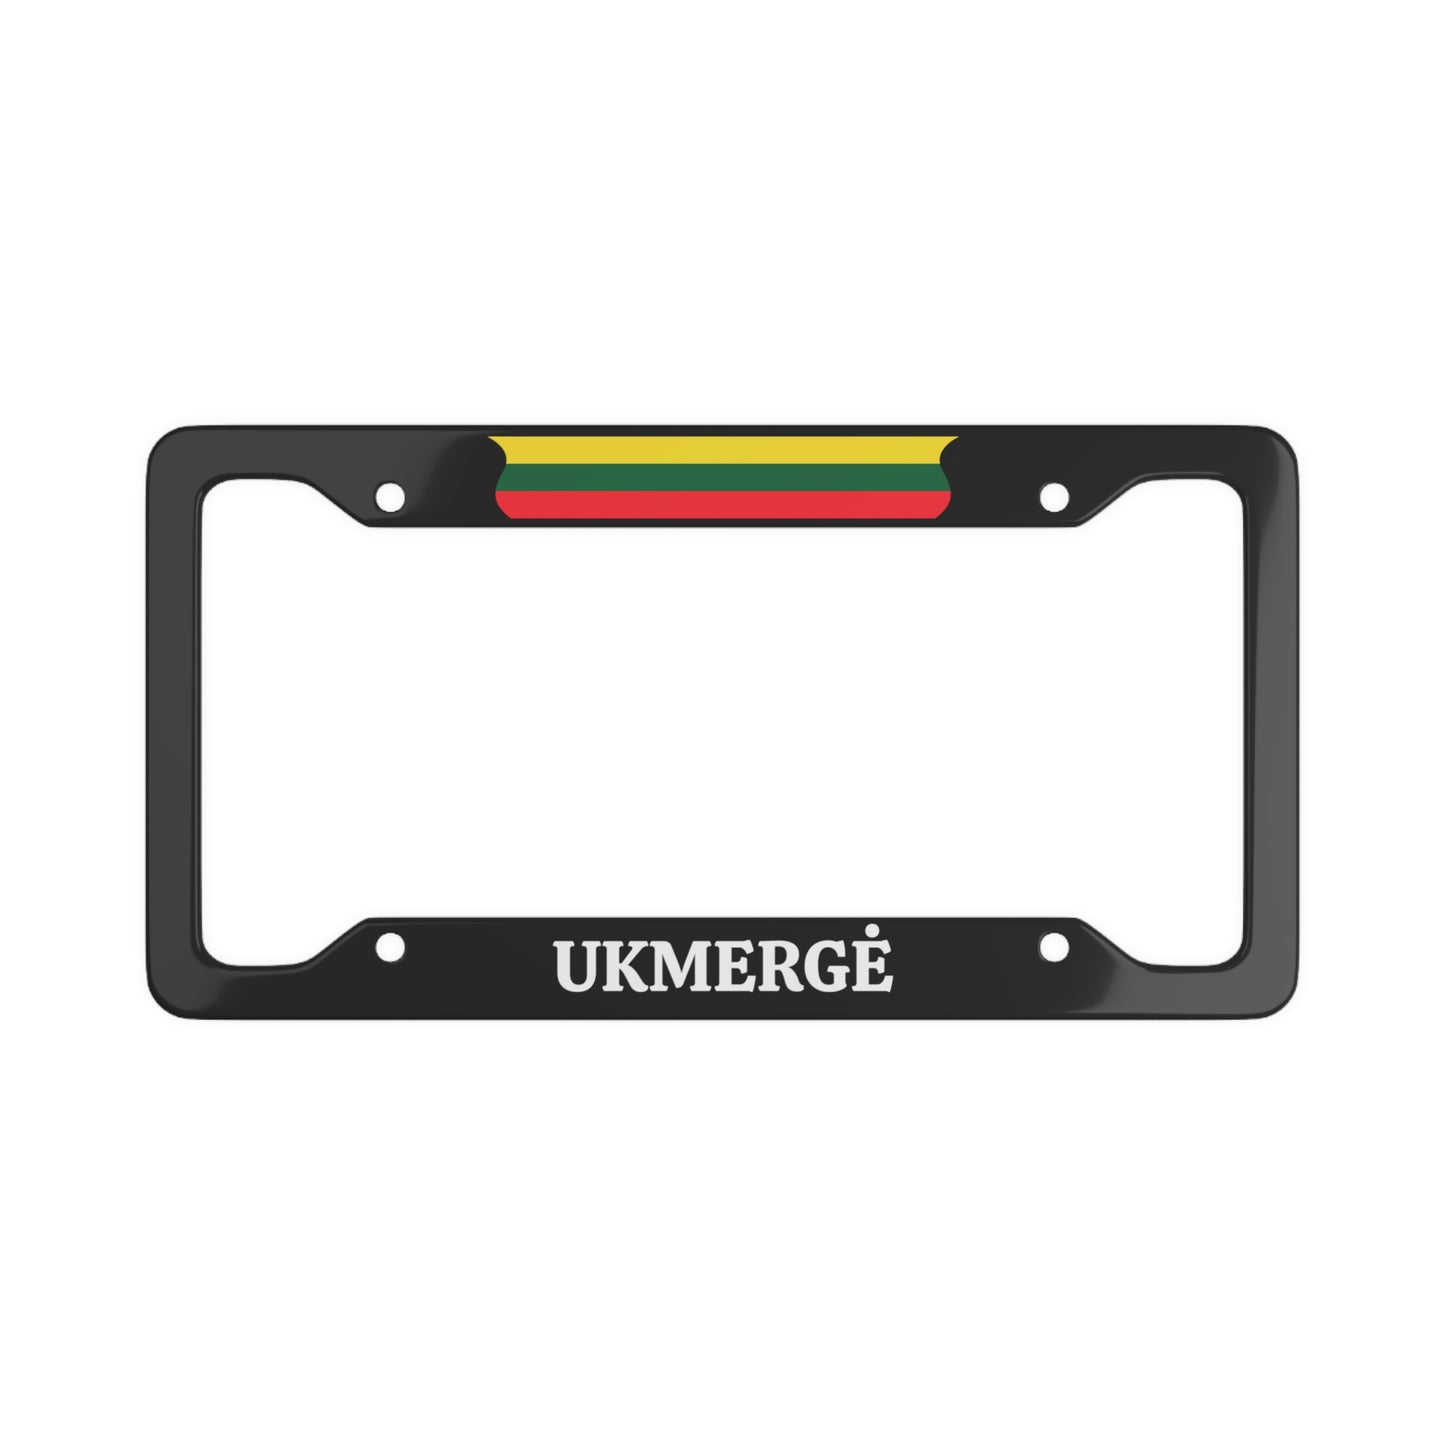 UKMERGĖ, Lithuania Flag License Plate Frame